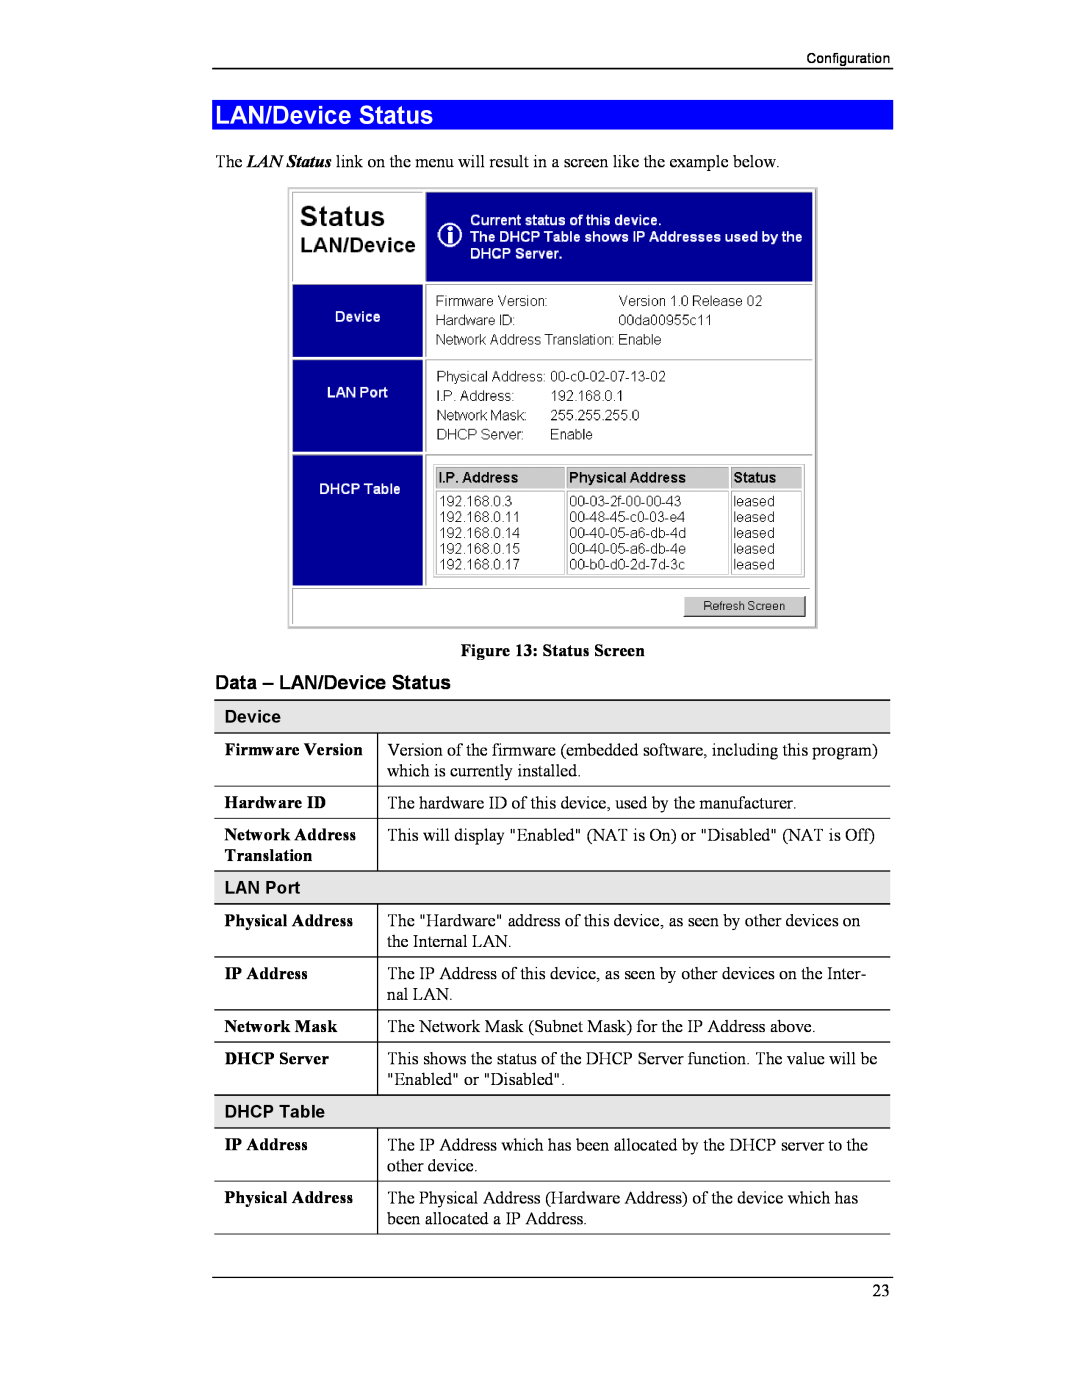 CNET CNWR-811P manual Data - LAN/Device Status, LAN Port, DHCP Table 